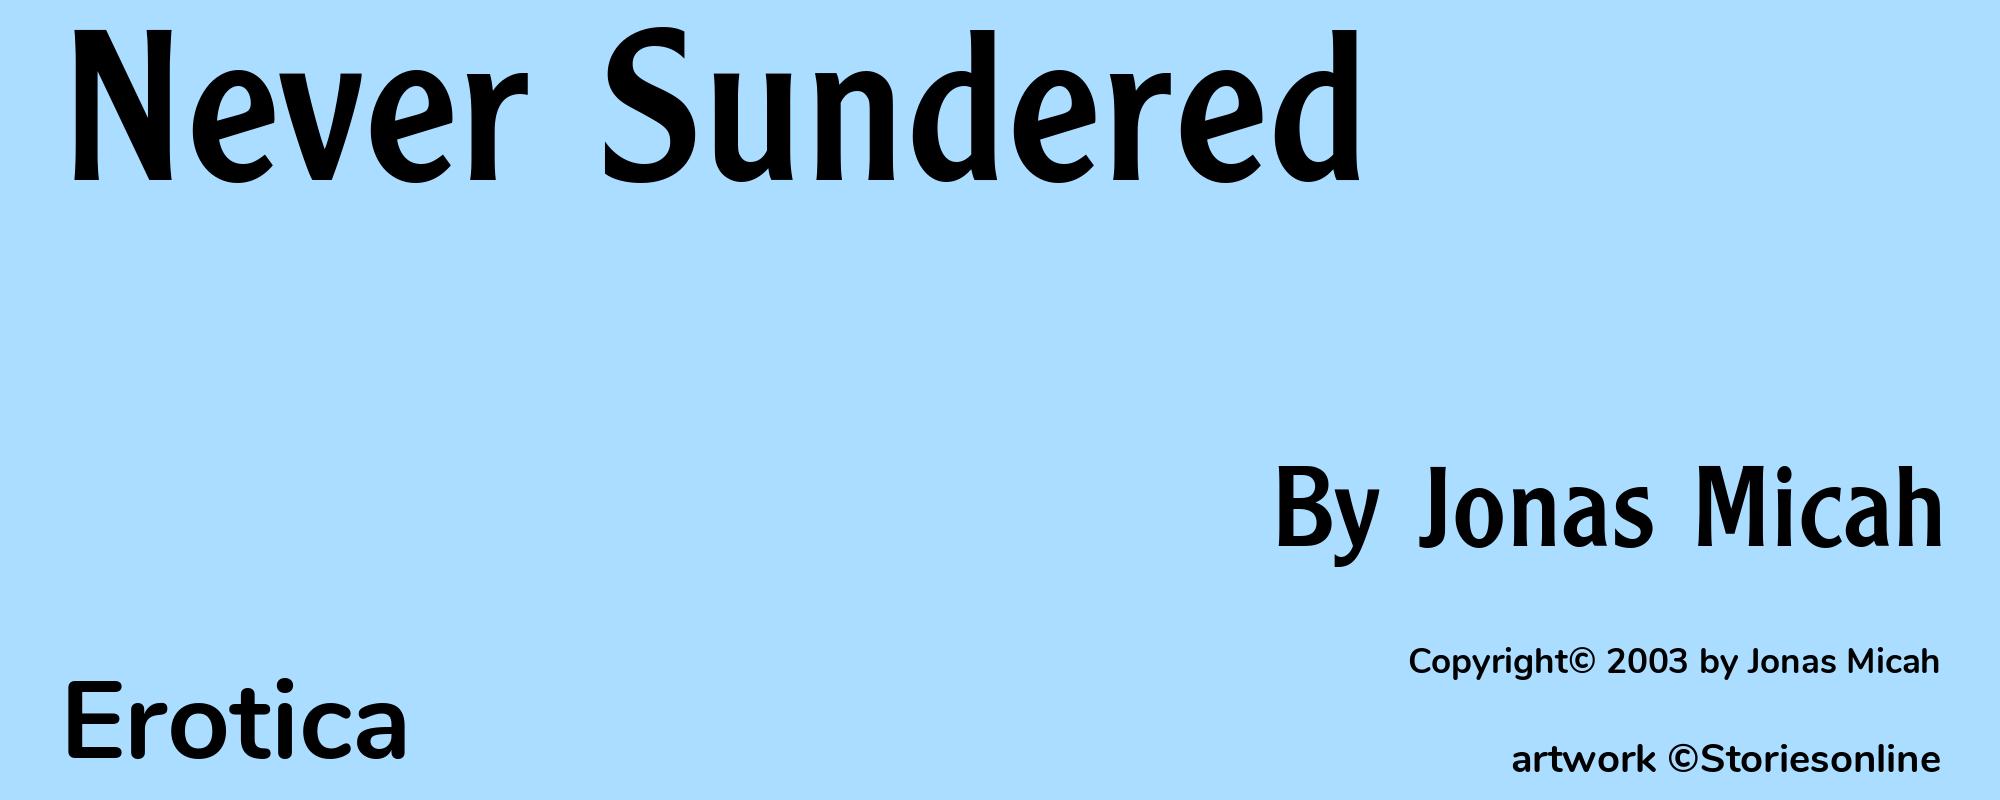 Never Sundered - Cover